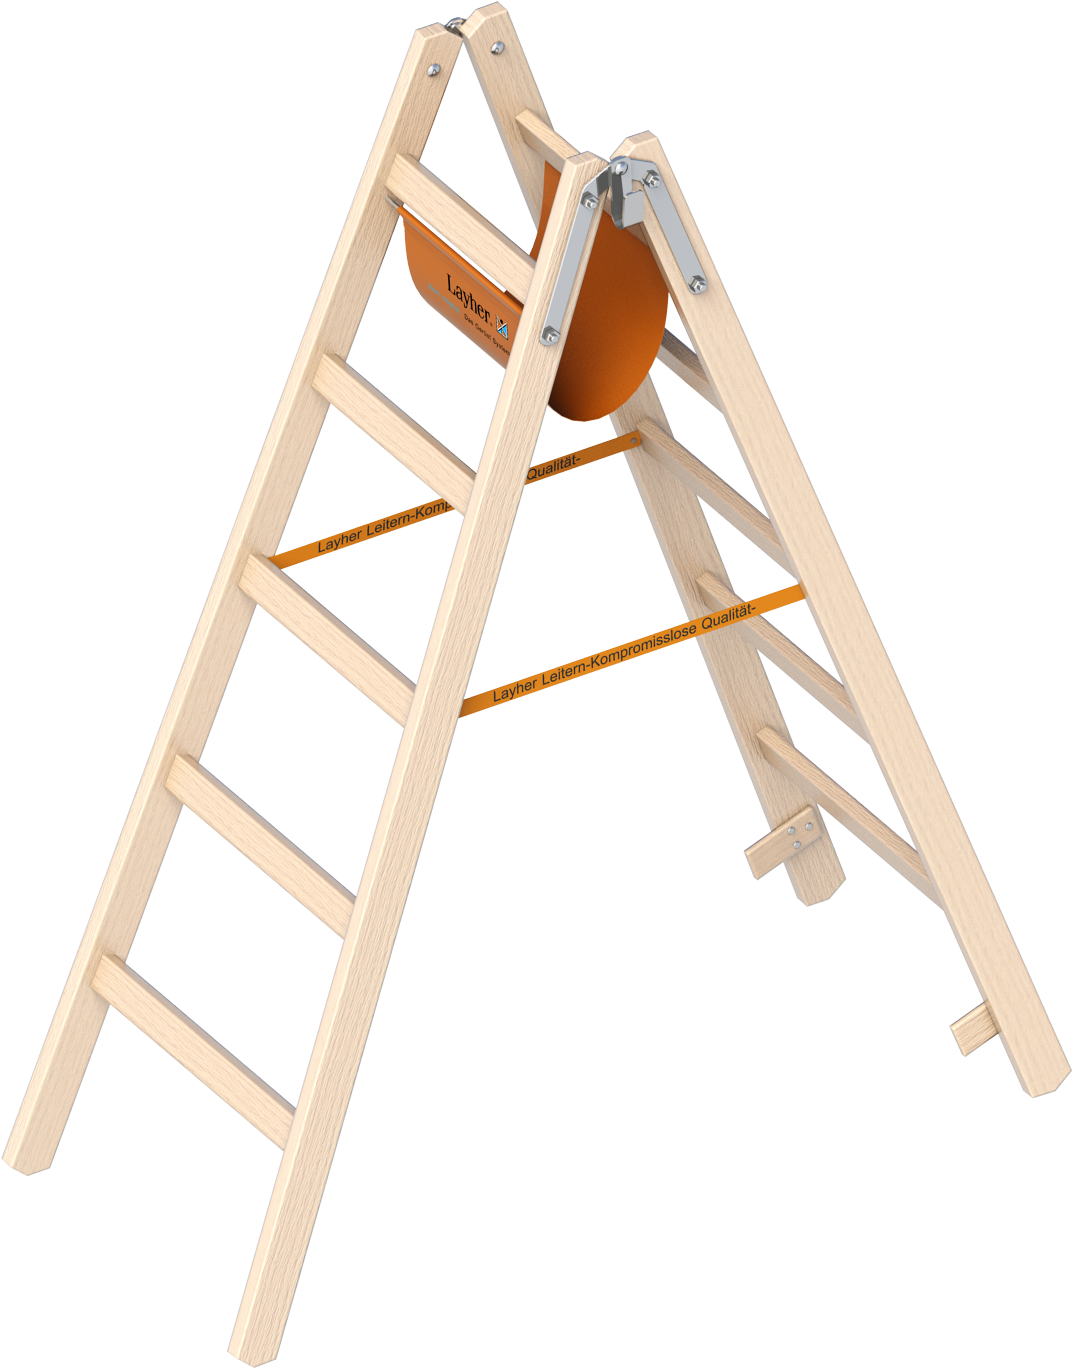 Layher Wooden Rung Ladder - Layher Holzstehleiter 1038206 - 1,85 M Länge (1111x1394), Png Download